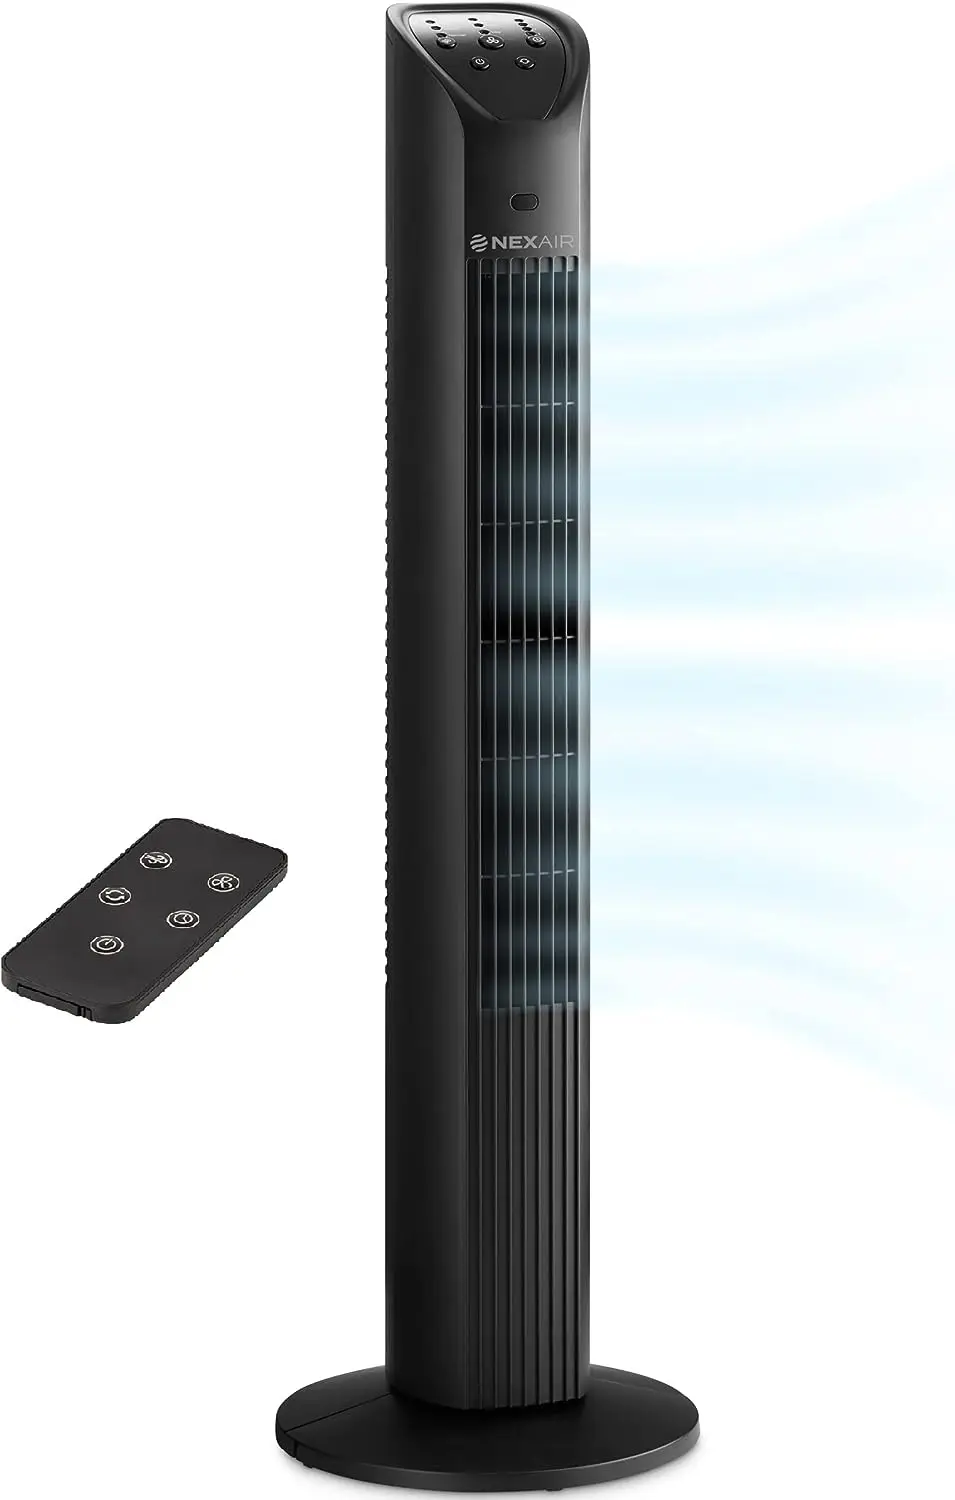 

Осциллирующий вентилятор, 3-скоростной портативный вентилятор с дистанционным управлением, тихий напольный вентилятор для спальни с таймером автовыключения 7,5 ч, м